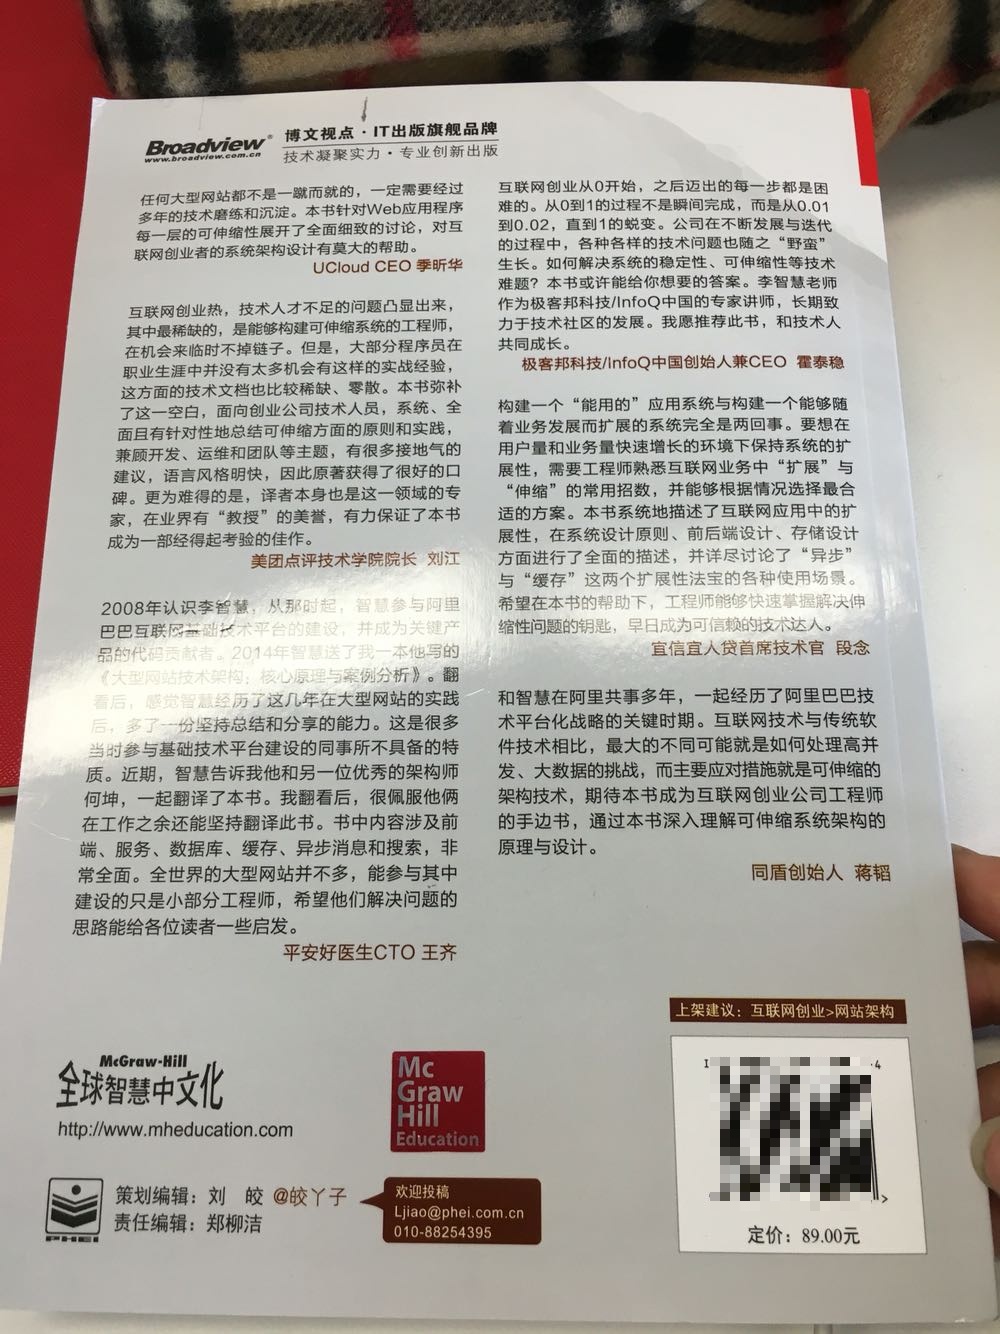 本身是一本很棒的书 一直想买的 可是英文是硬伤 终于等到中文版 读了一点儿才来评价的 翻译的非常棒 非常贴切 不愧是大牛翻译作品